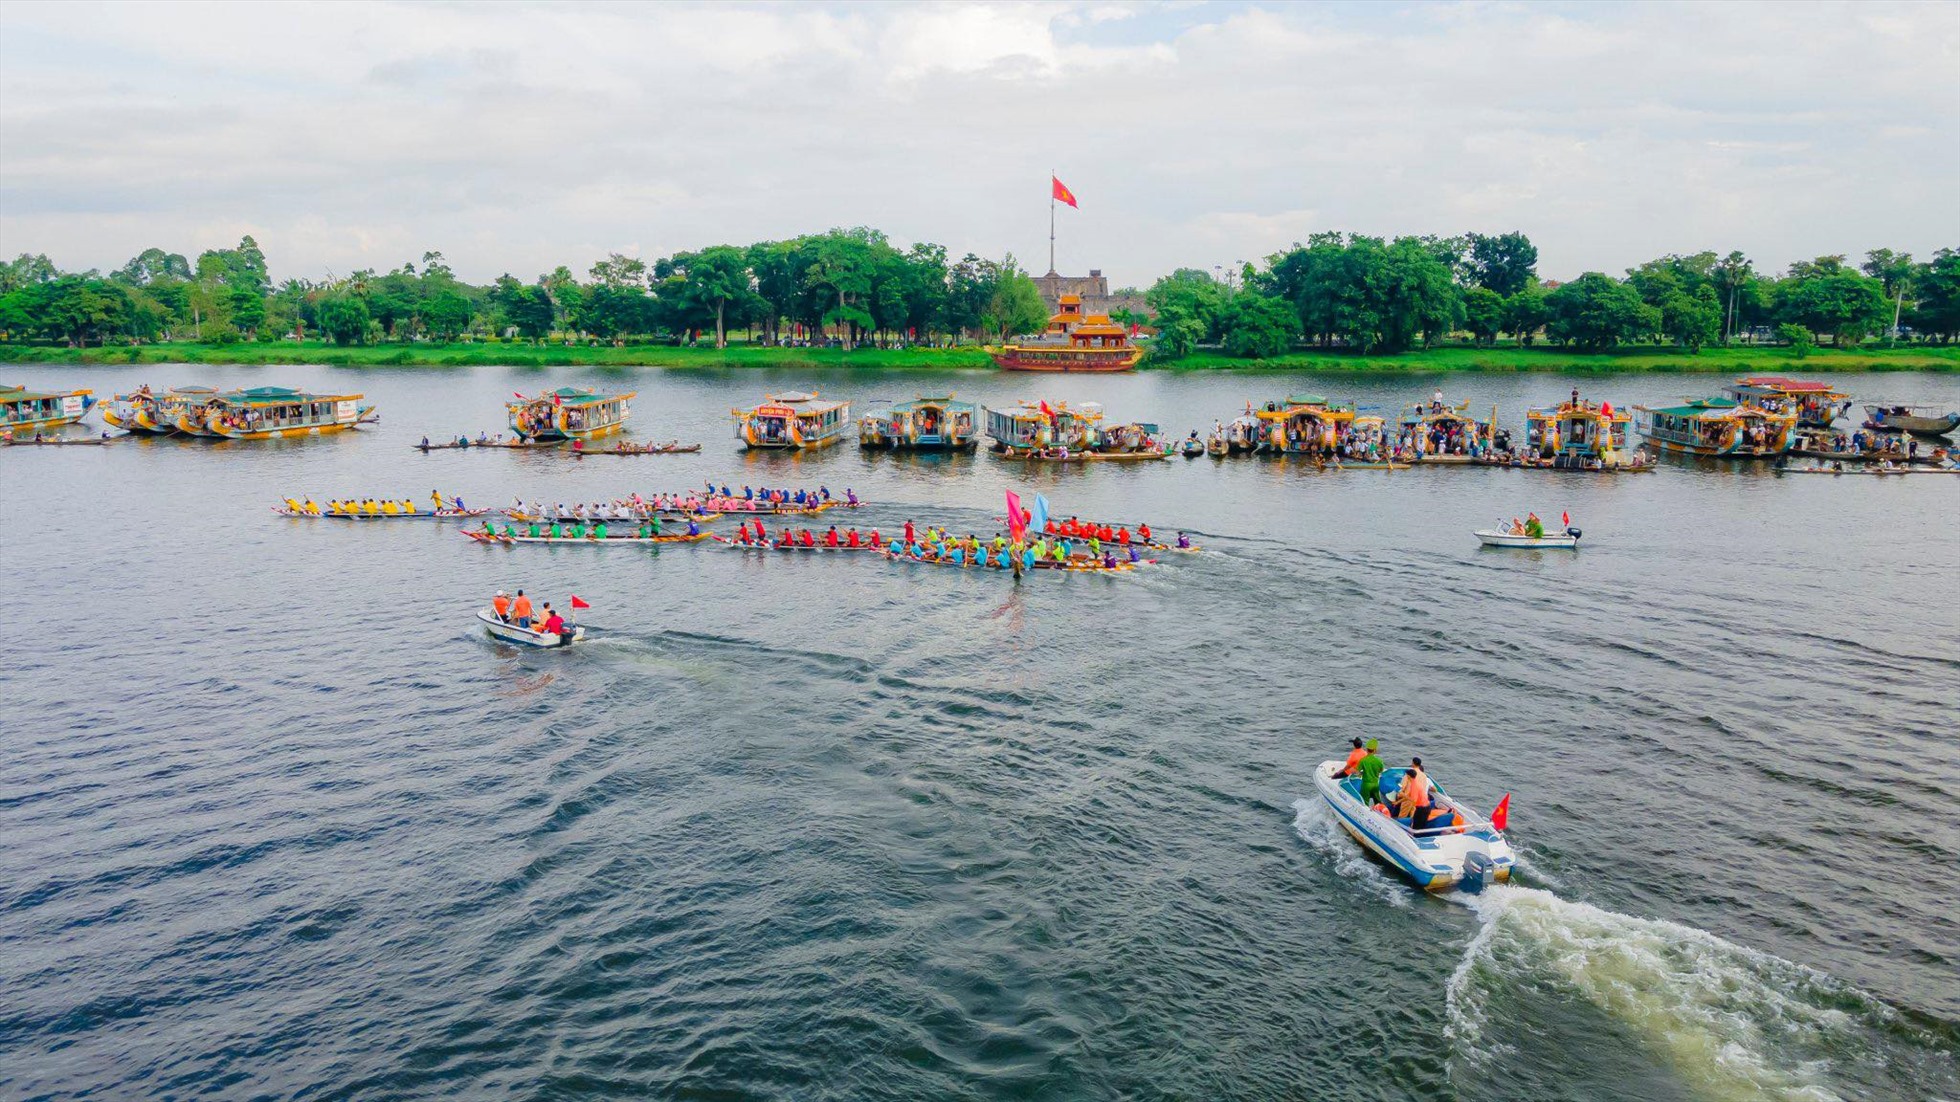 Được duy trì và tổ chức hằng năm với mục đích bảo tồn và phát huy truyền thống văn hóa, thể thao của địa phương, giải đua ghe truyền thống bên cạnh rèn luyện kỹ năng sông nước cho thanh niên, còn là dịp để tăng cường giao lưu, đoàn kết giữa các địa phương.